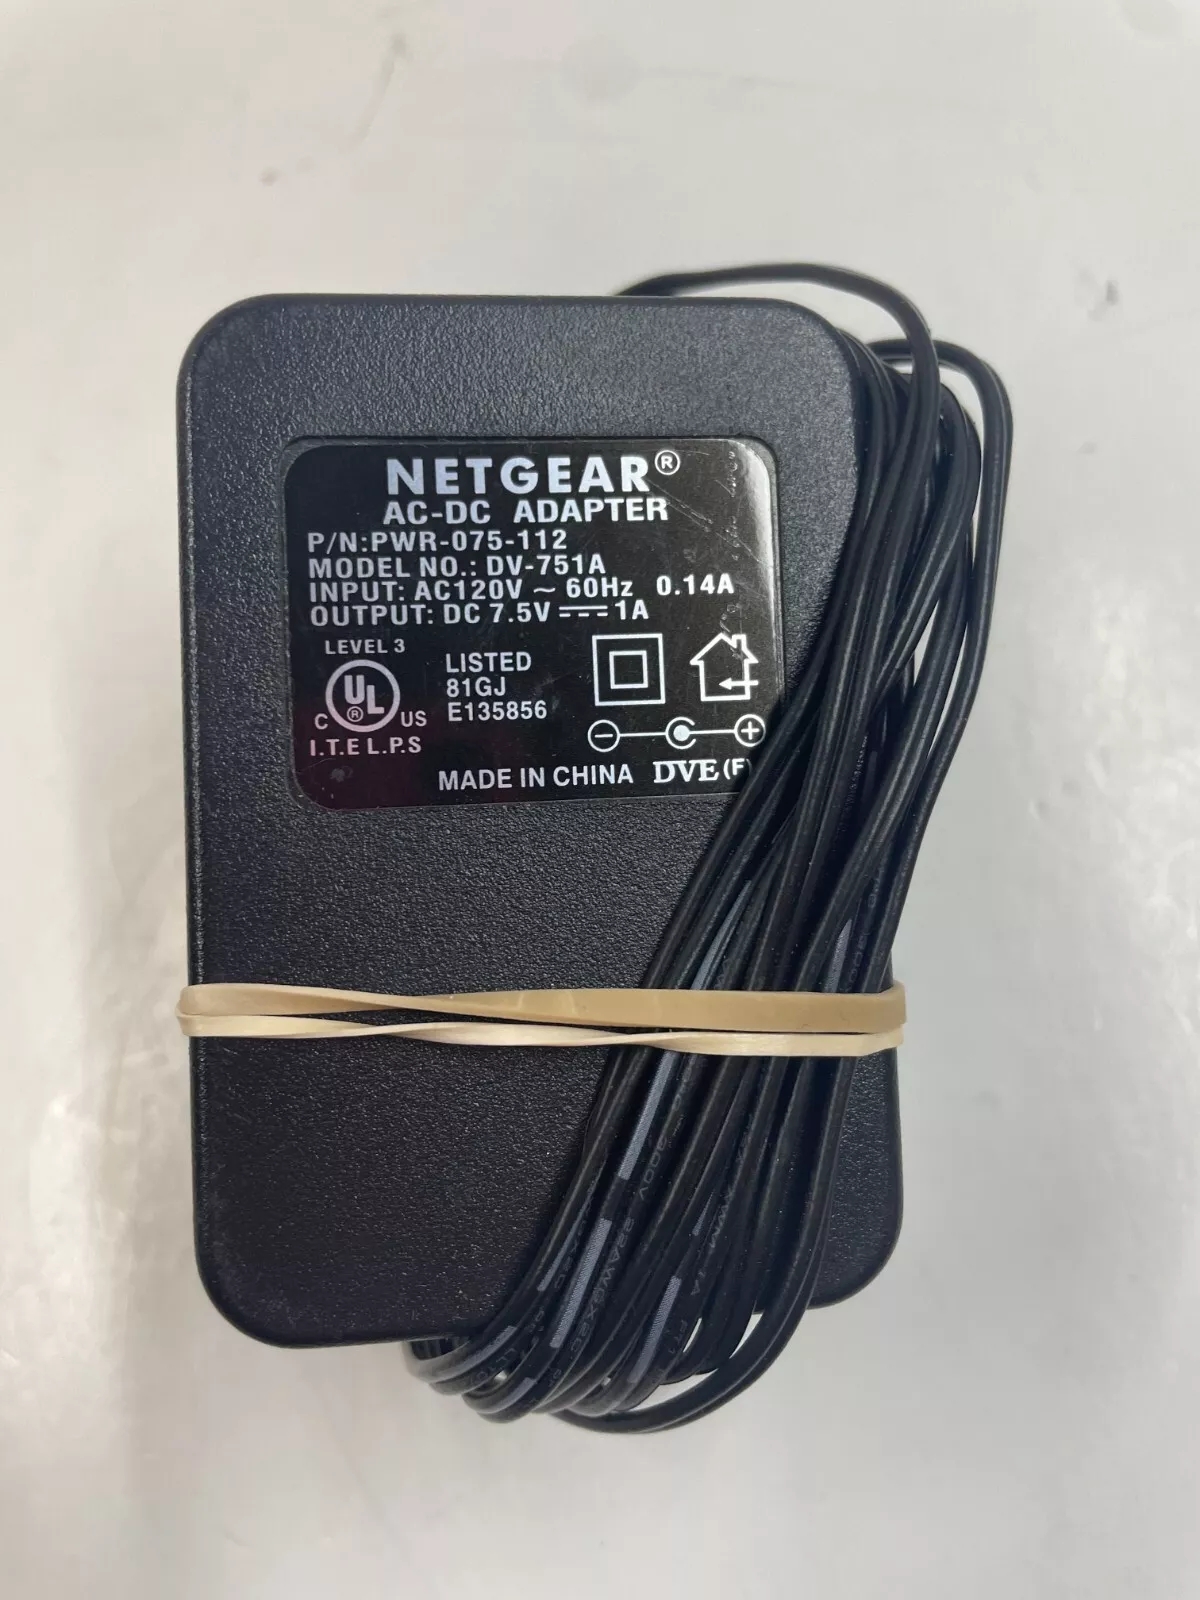 *Brand NEW*Netgear DV-751A AC120V DC 7.5V 1A AC ADAPTER Power Supply - Click Image to Close